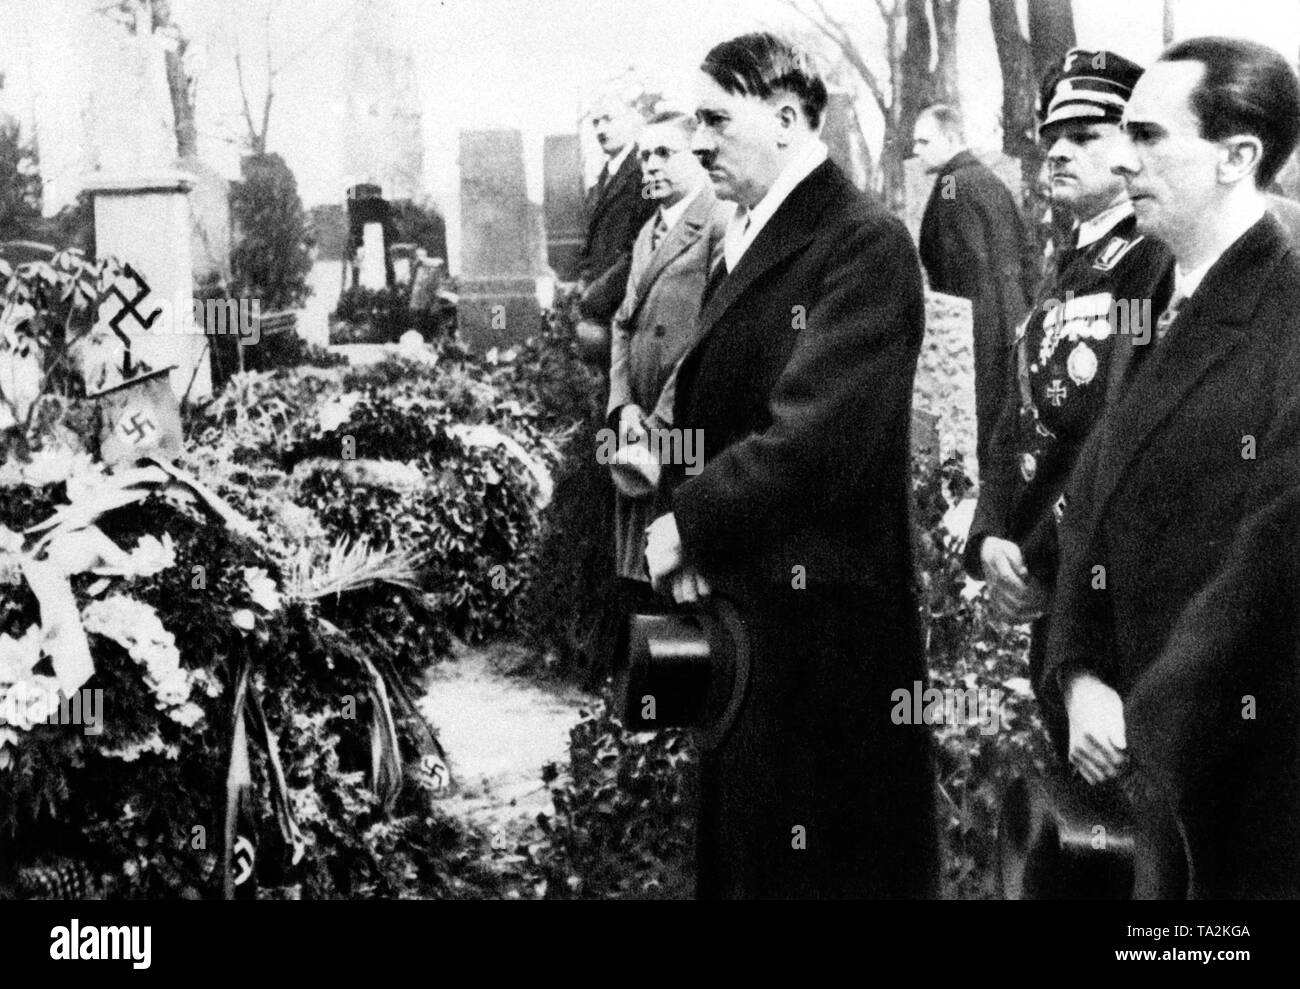 Adolf Hitler, Sepp Dietrich und Josef Goebbels in der luisenstadt Friedhof in Berlin vor der Eröffnung der Reichstag in Potsdam am 21. März 1933. Stockfoto